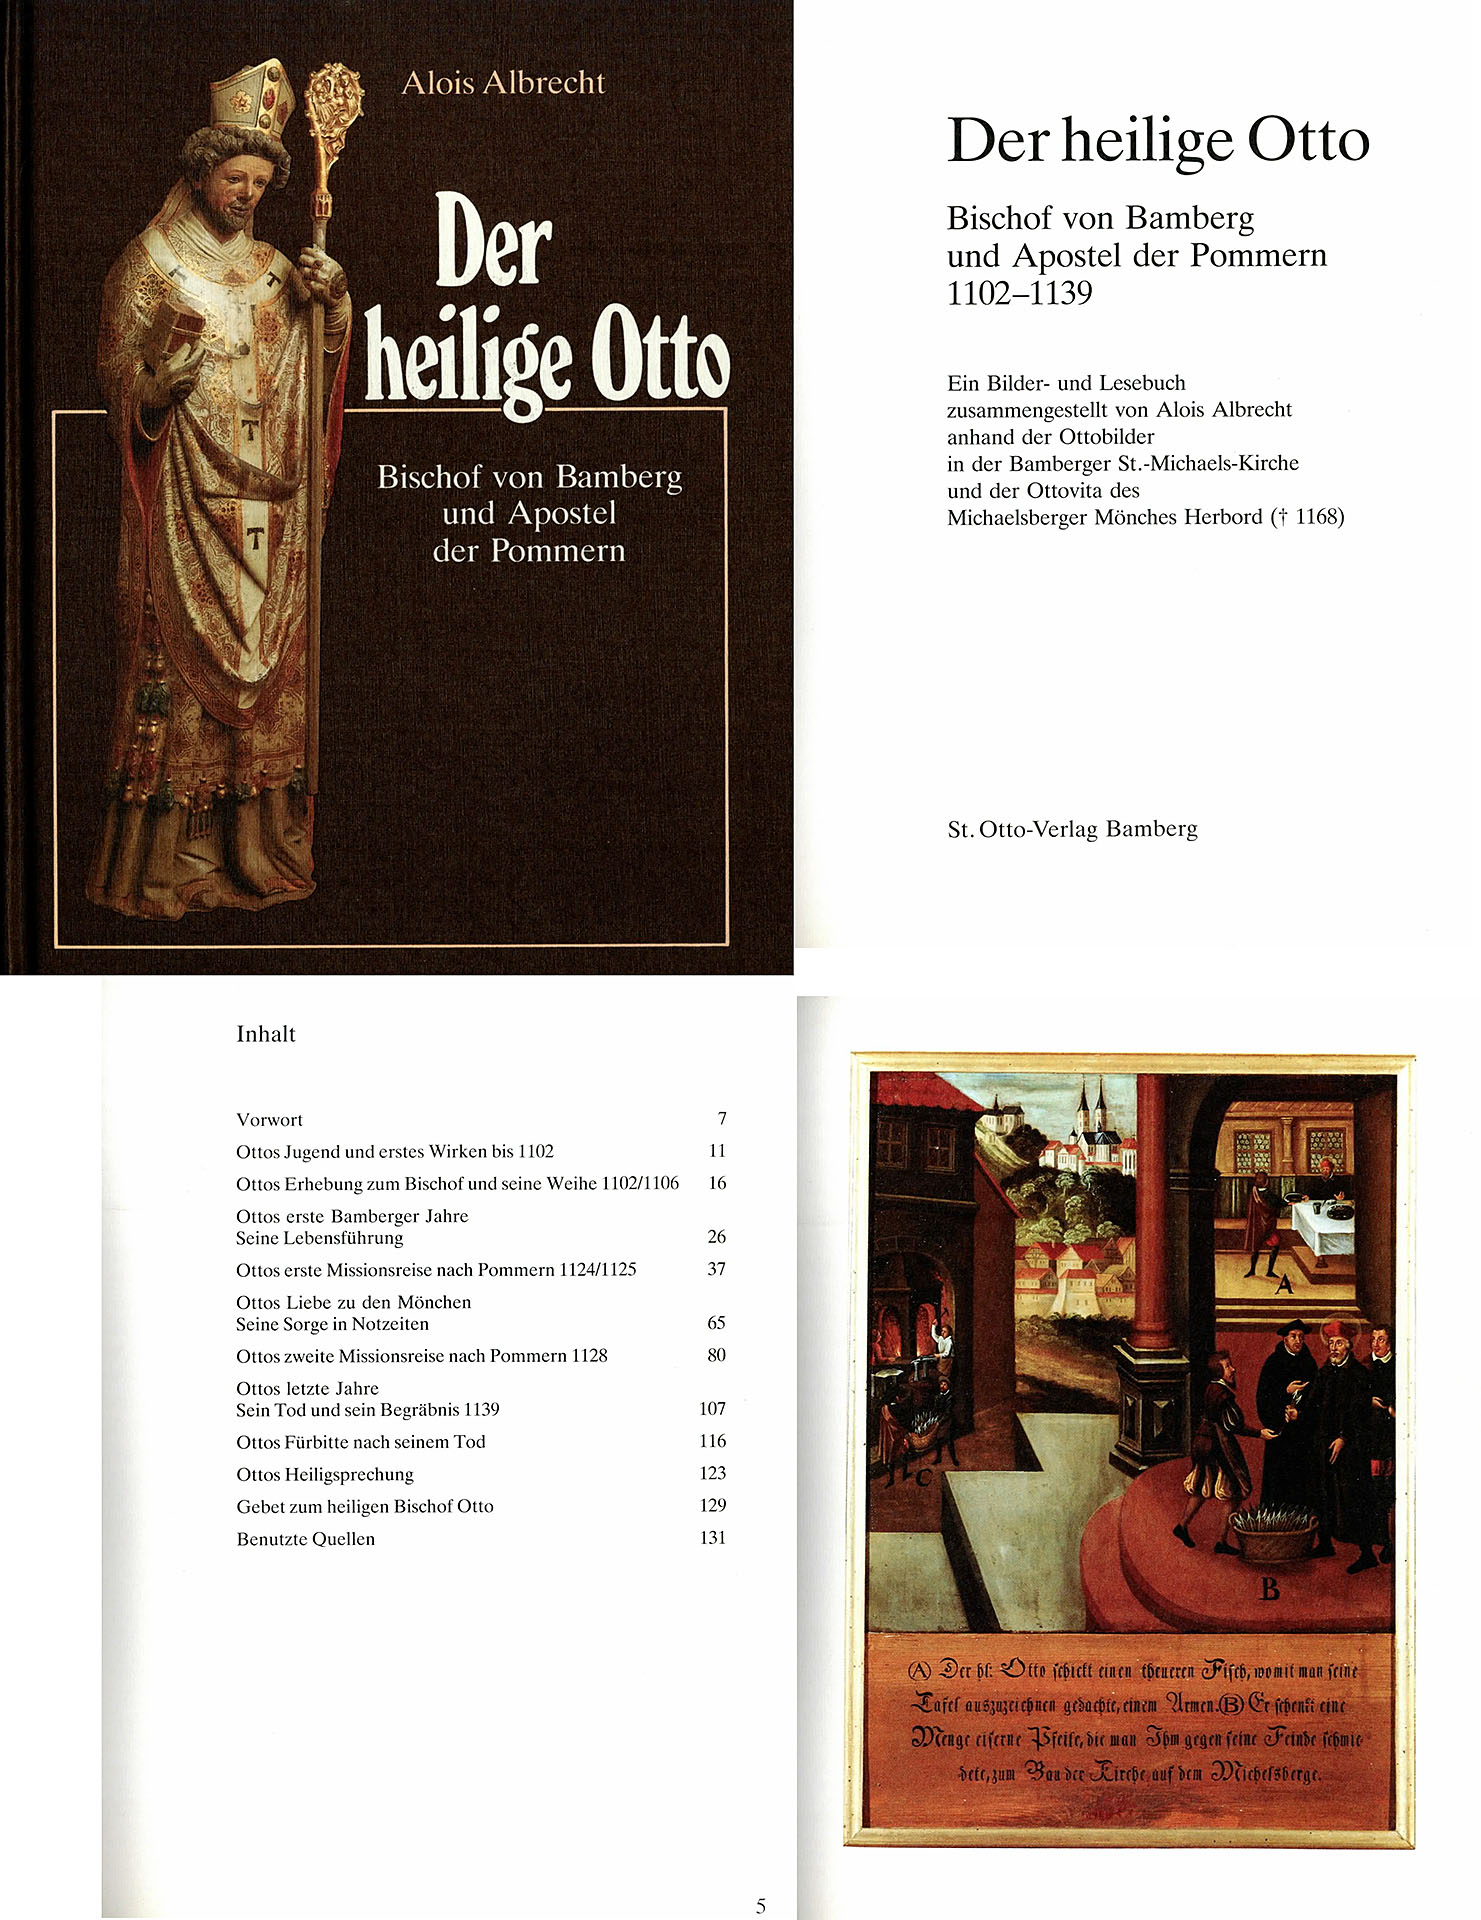 Der heilige Otto - Albrecht, Alois